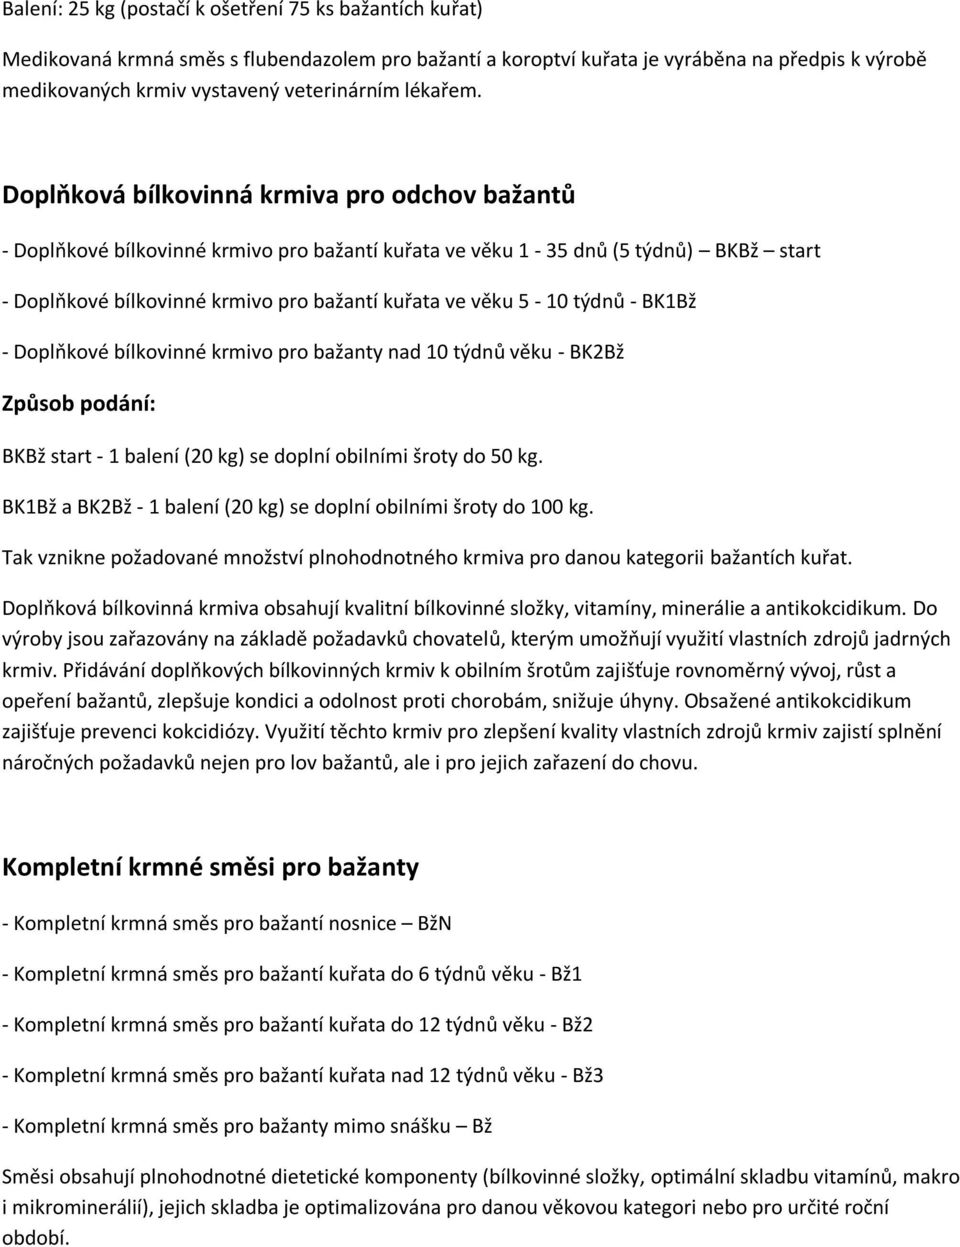 Doplňková bílkovinná krmiva pro odchov bažantů - Doplňkové bílkovinné krmivo pro bažantí kuřata ve věku 1-35 dnů (5 týdnů) BKBž start - Doplňkové bílkovinné krmivo pro bažantí kuřata ve věku 5-10